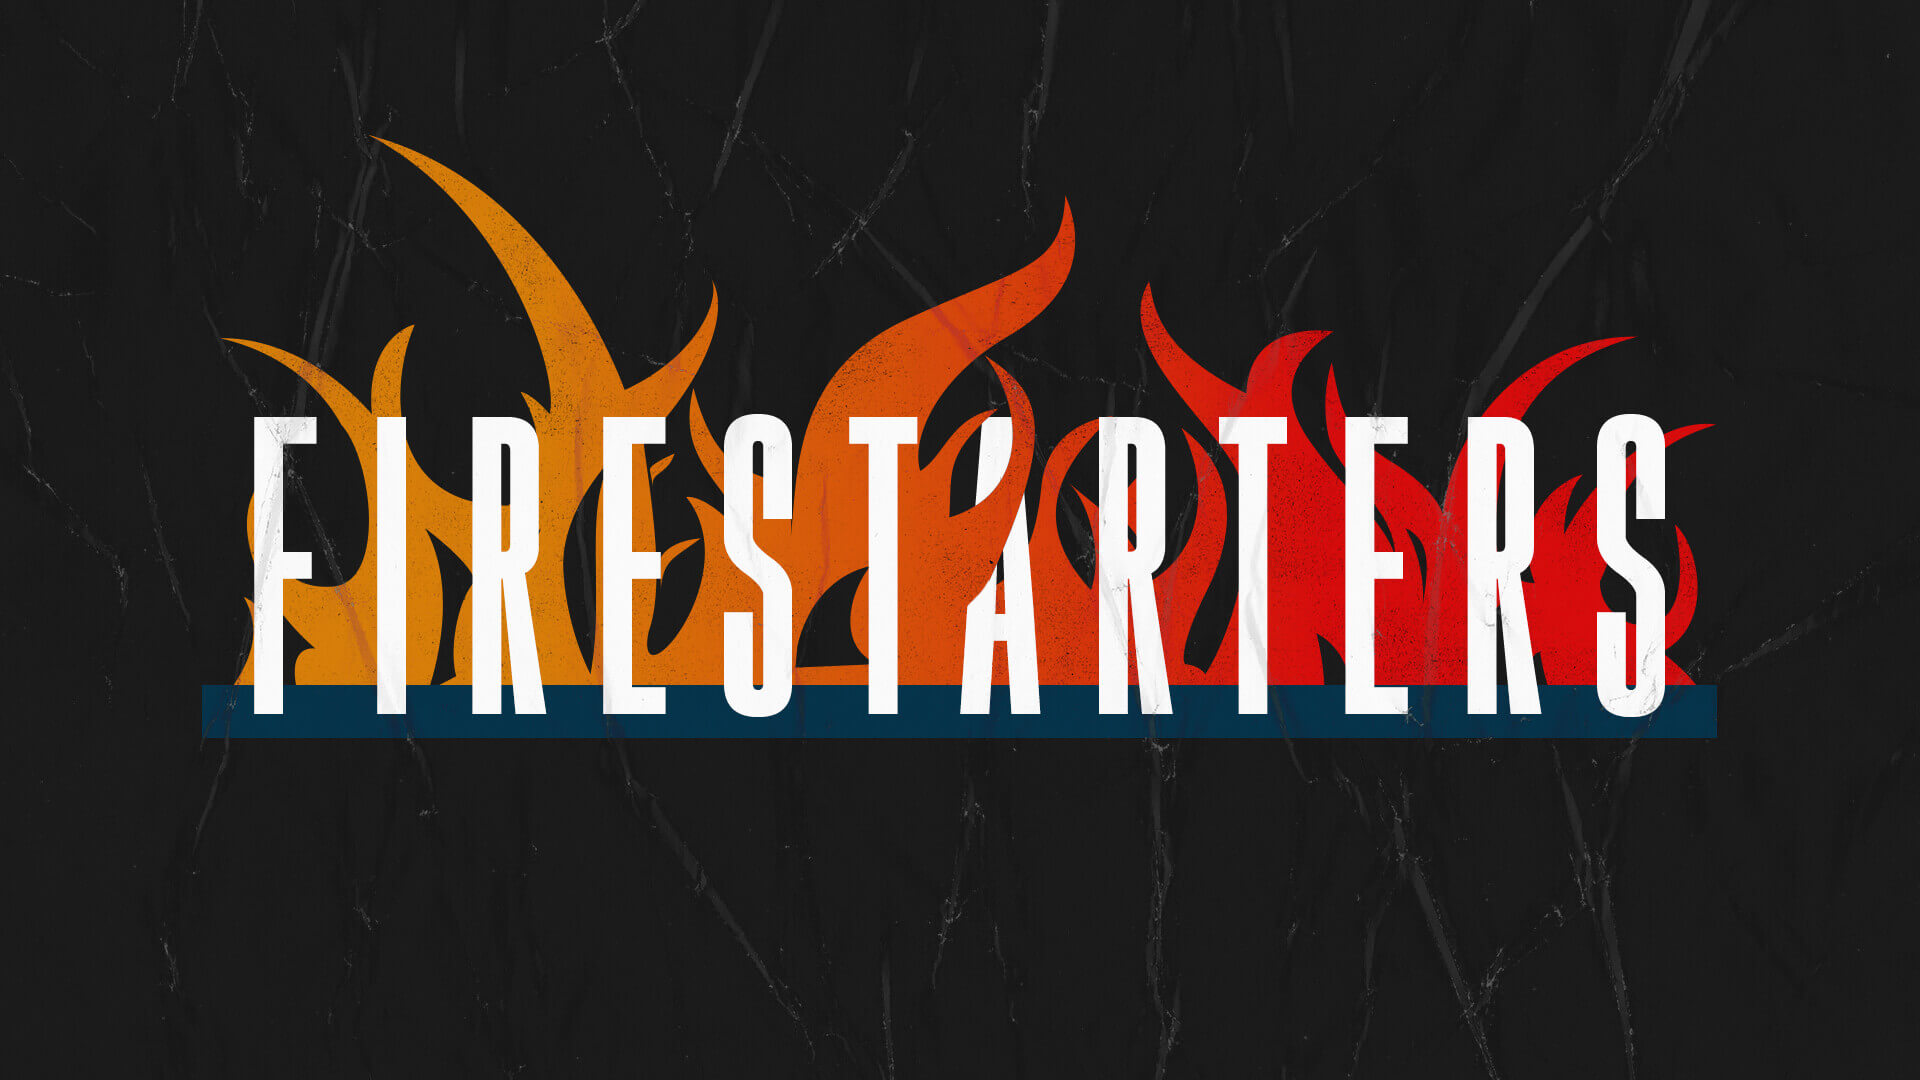 Firestarters Message Series